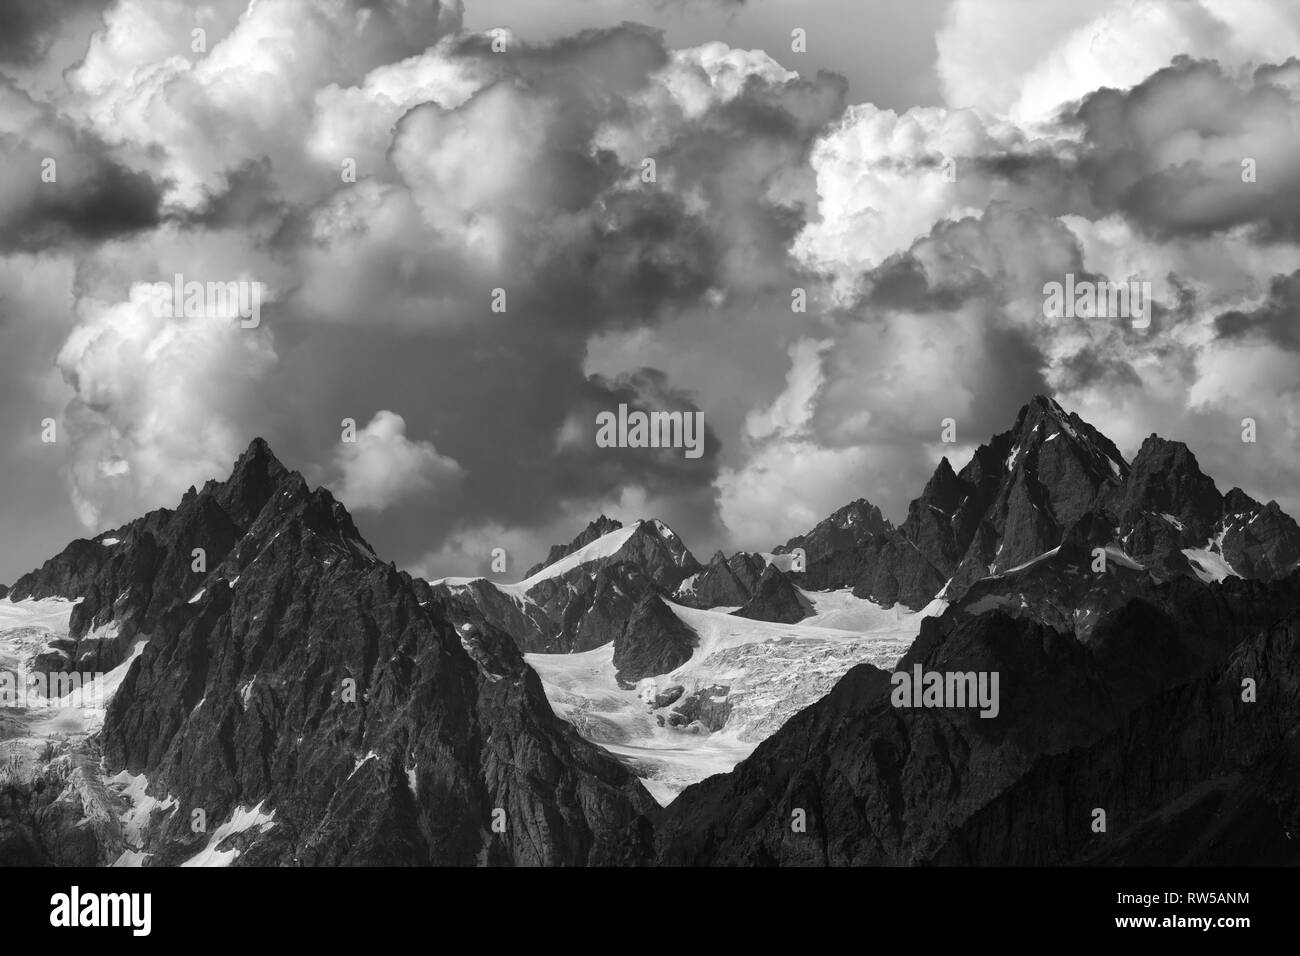 De hautes montagnes avec des glaciers et le ciel nuageux au jour d'été. Montagnes du Caucase, la Géorgie, la région Svaneti. Paysage aux tons noir et blanc. Banque D'Images